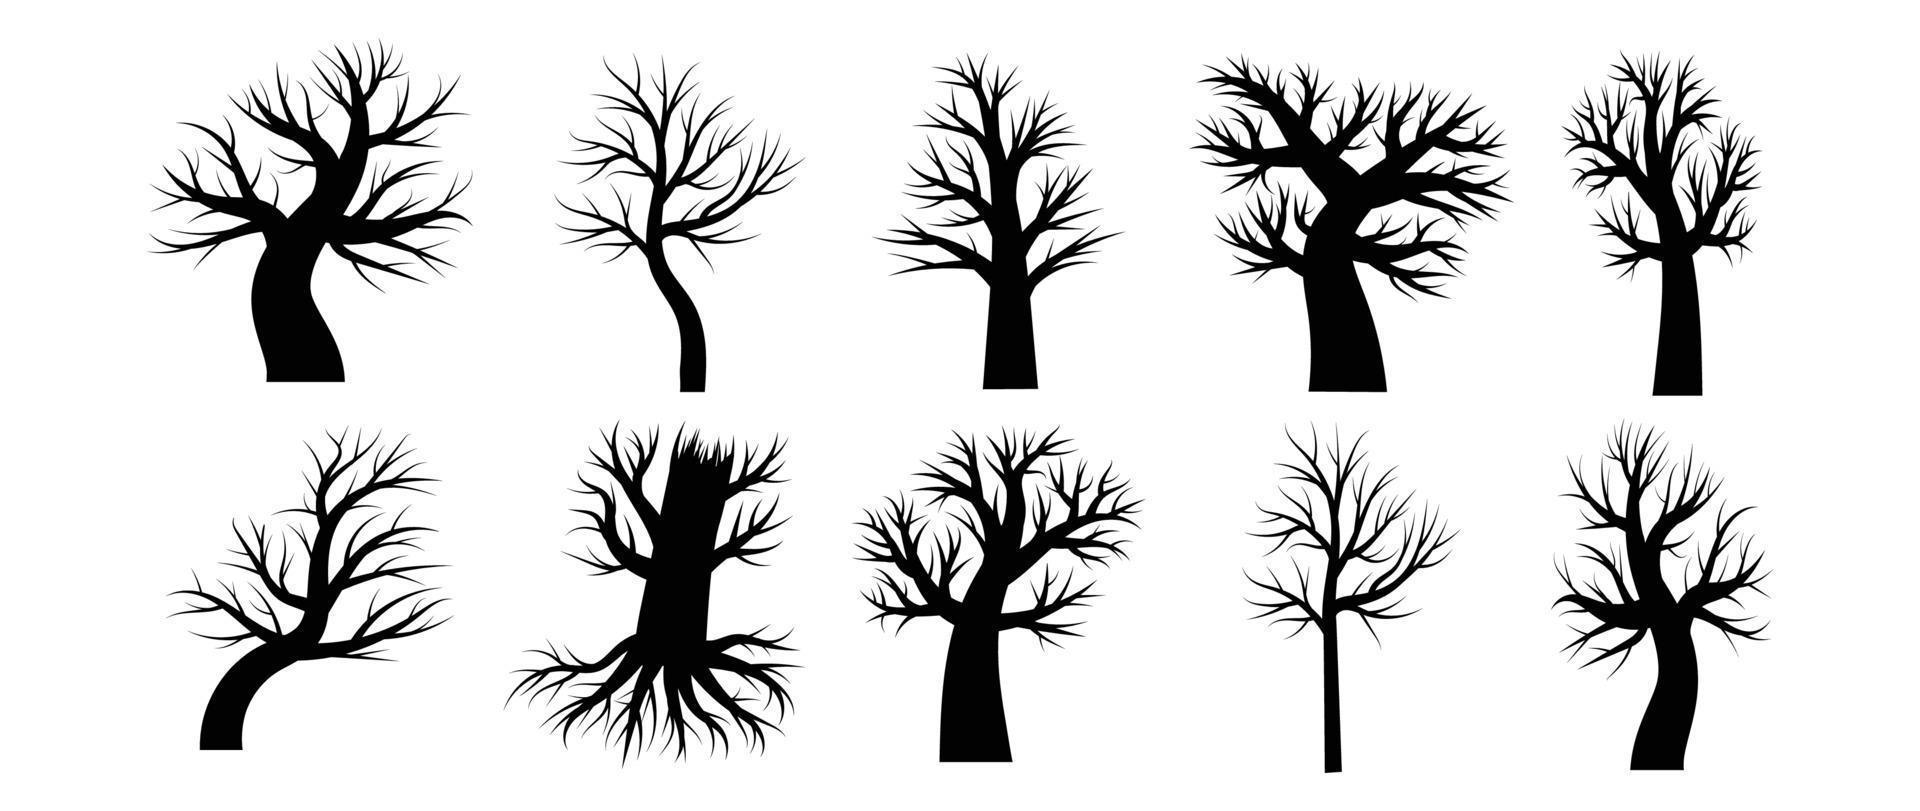 collection de silhouettes dessinées d'arbres sans feuilles ni feuillage. vecteur